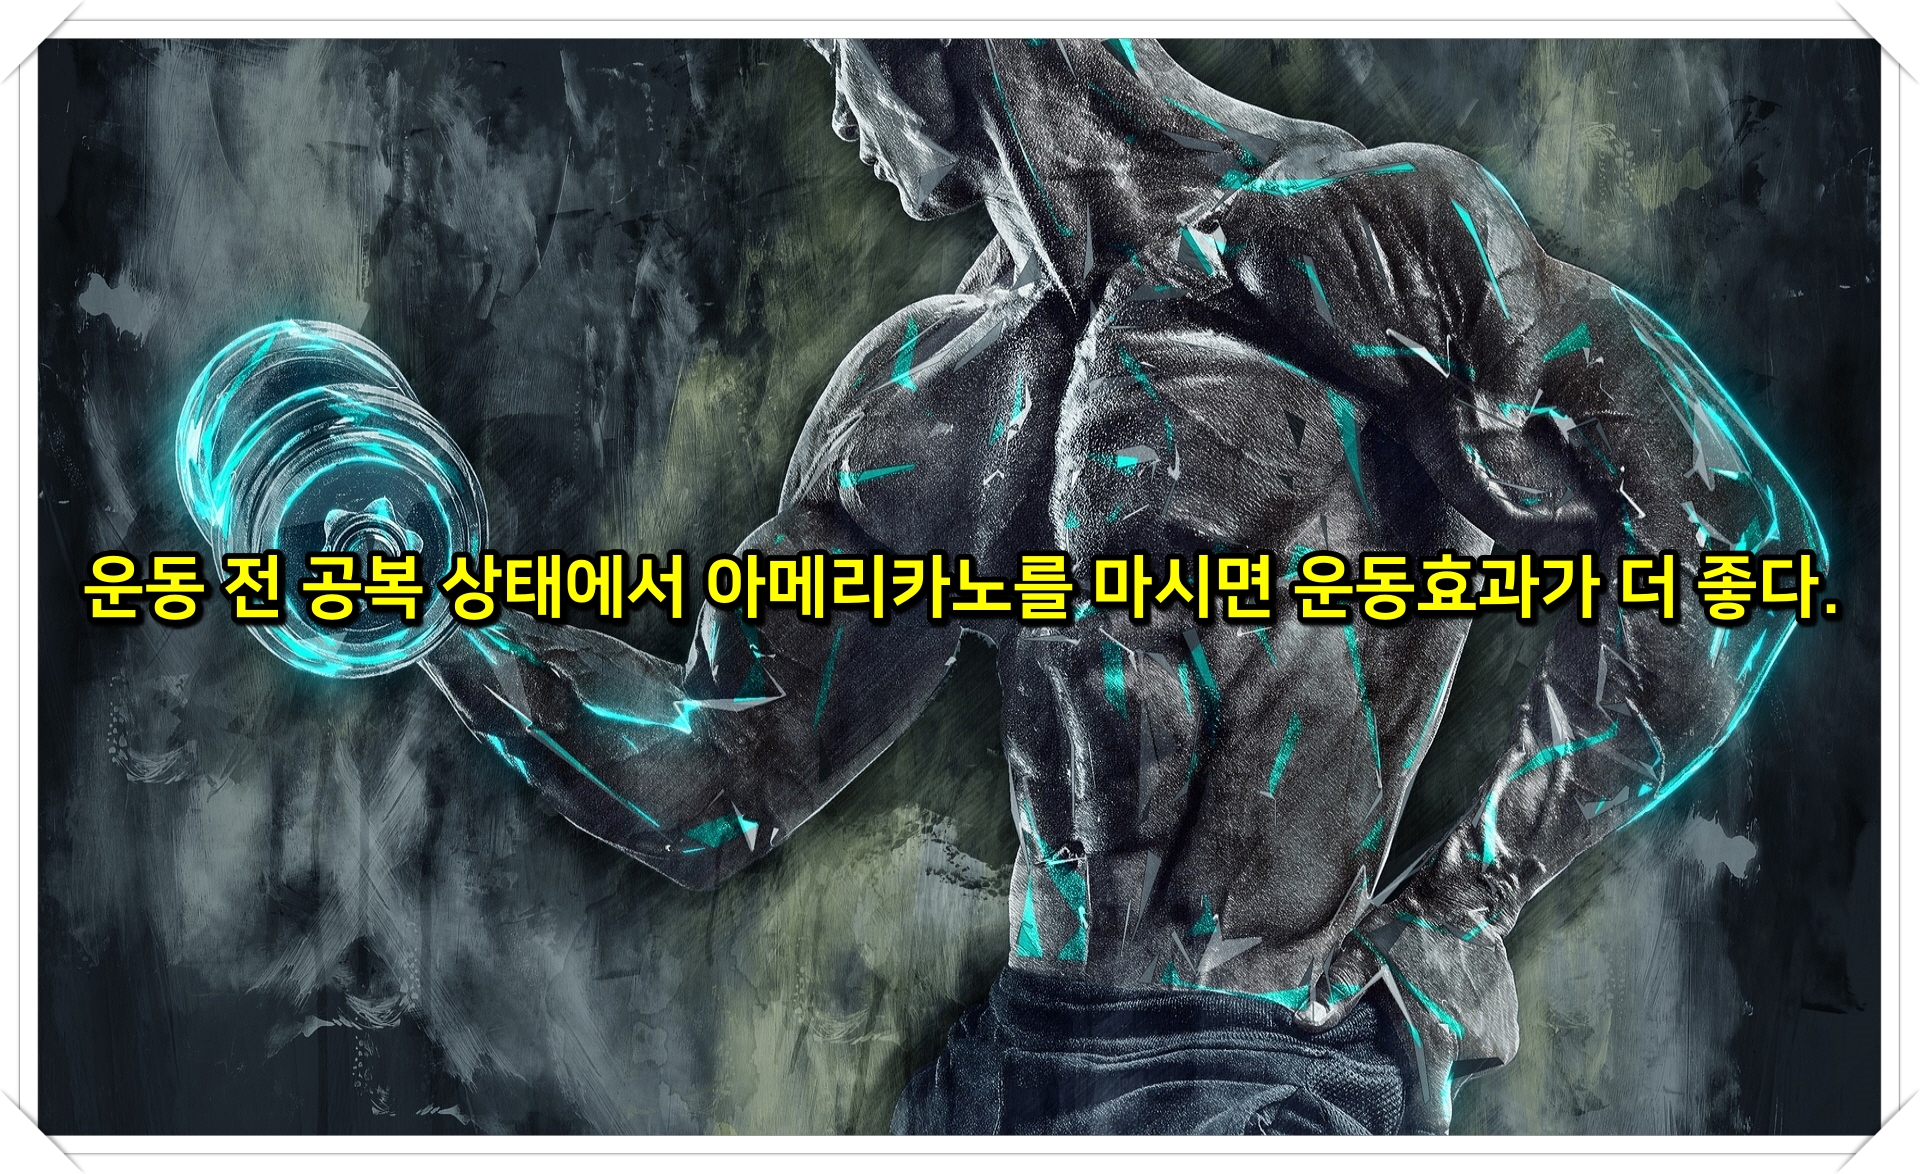 김종국 헬스 운동 다이어트 어록 명언 팁 9